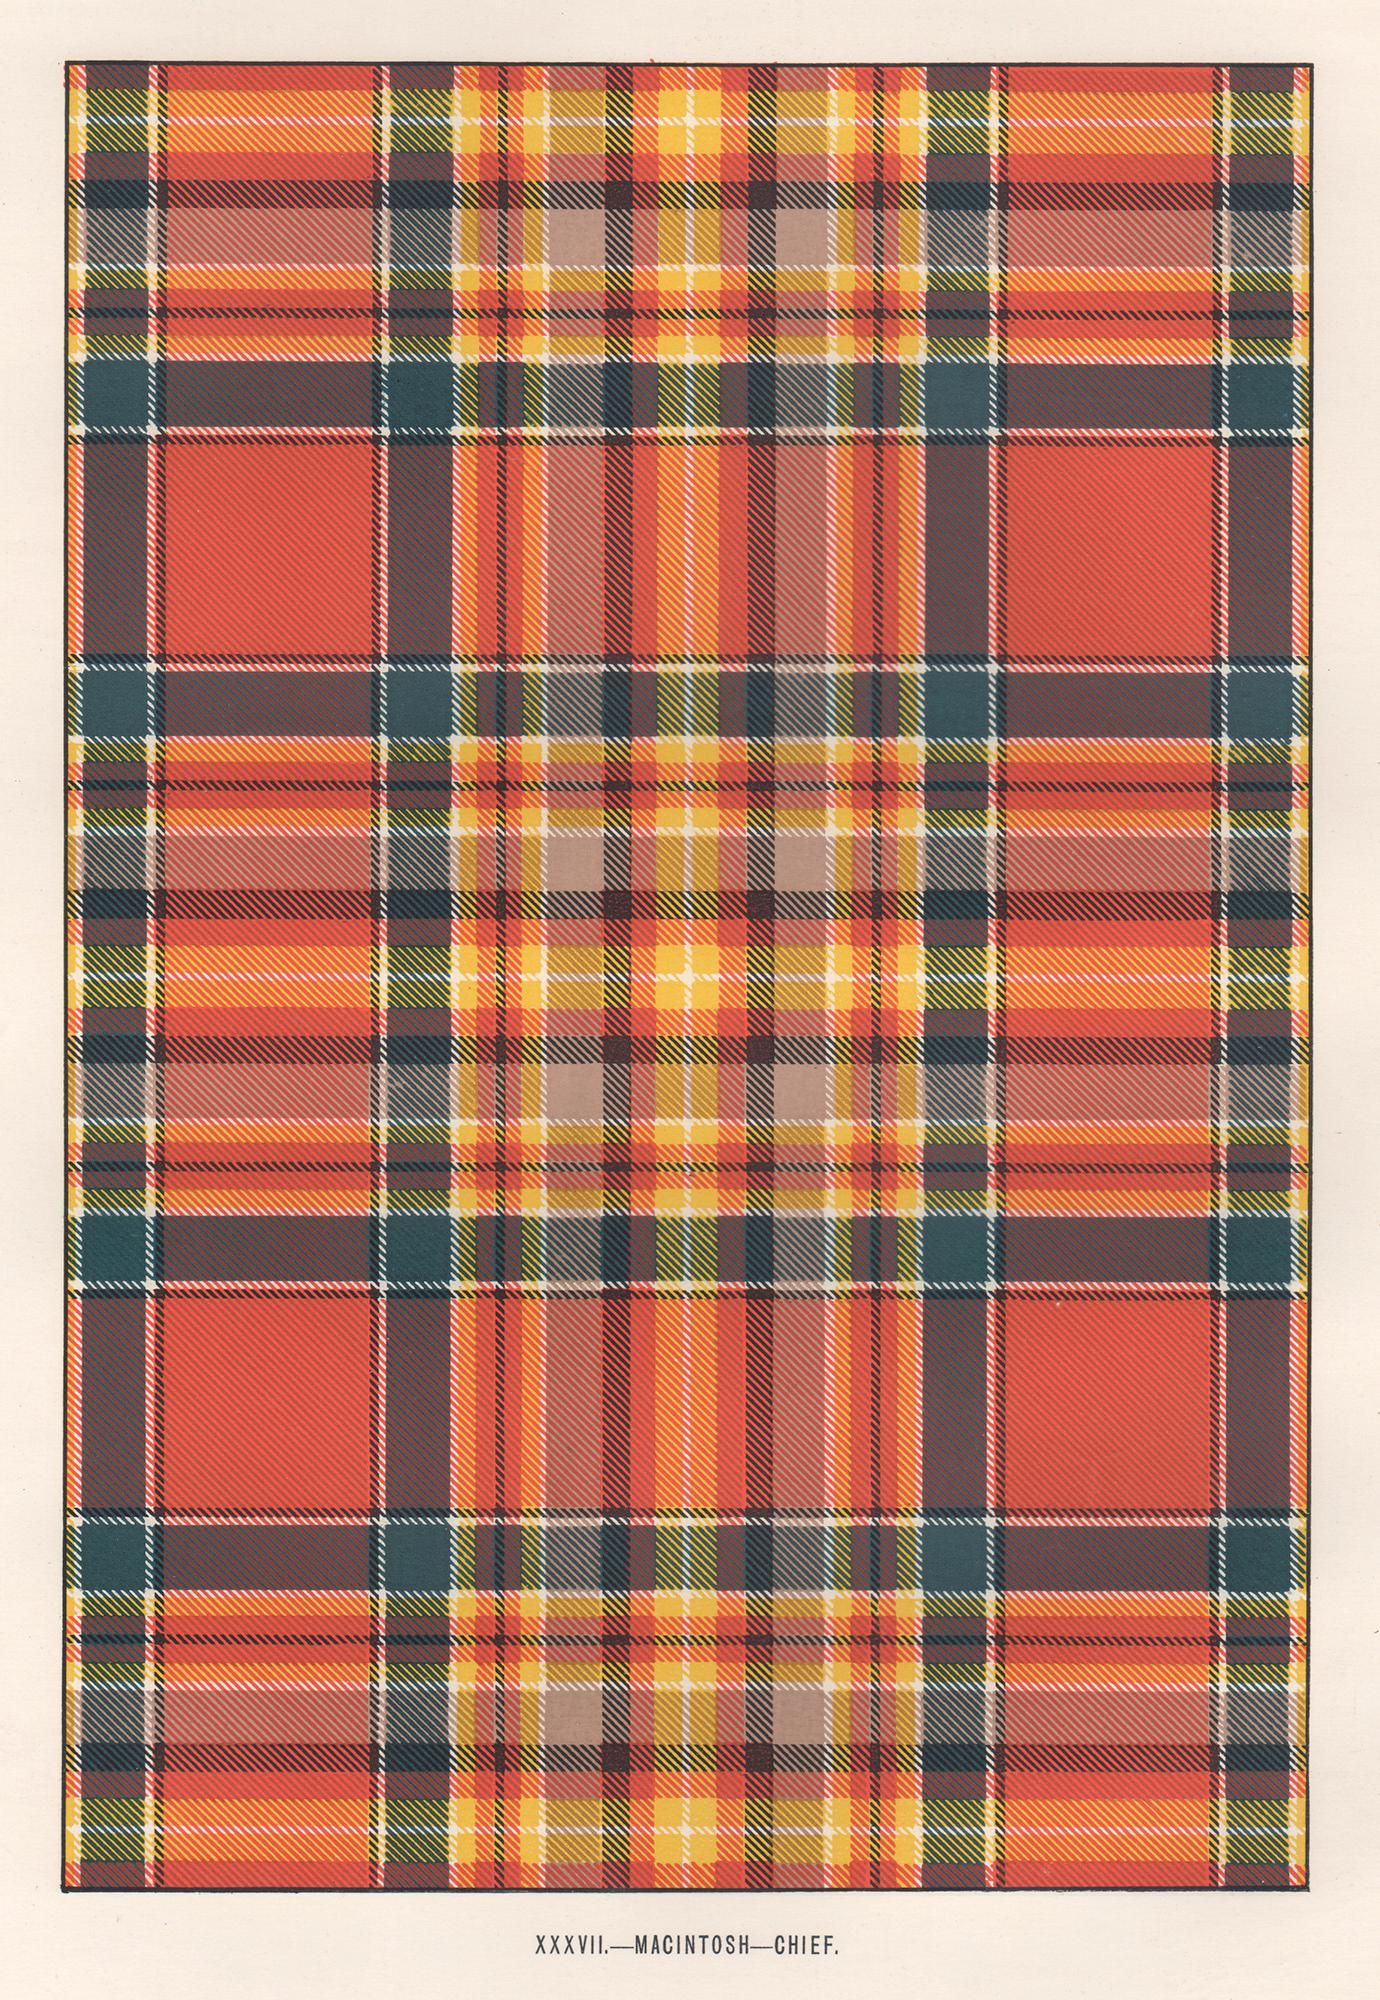 Unknown Interior Print – MacIntosh - Chief (Tartan), Kunstdesign-Lithographiedruck im schottischen Schottland